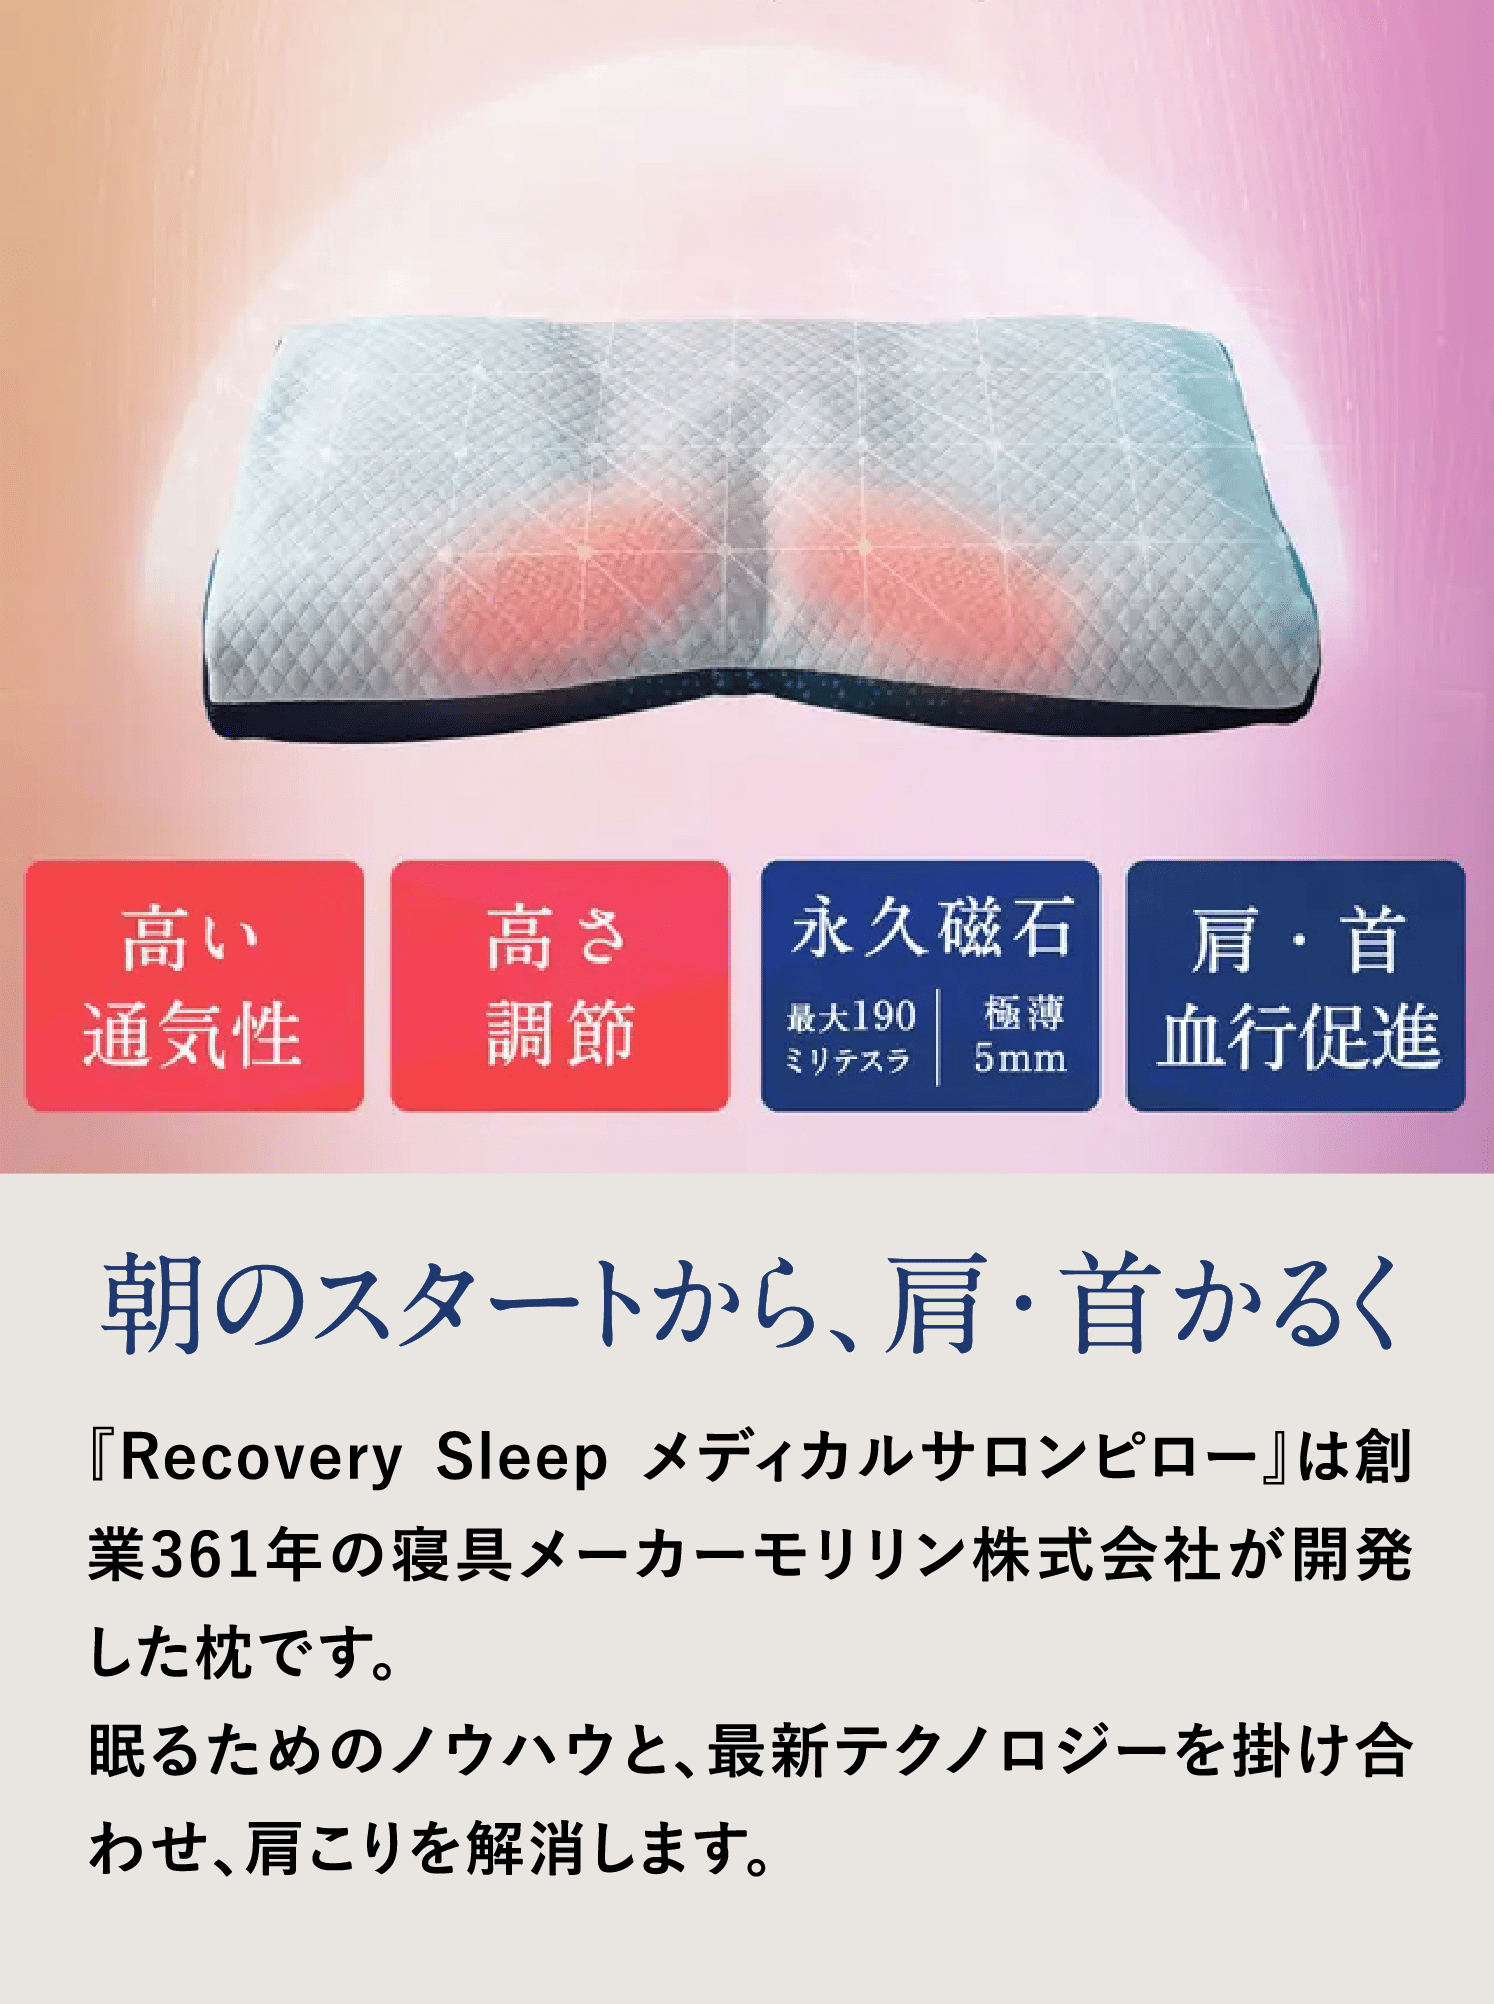 朝のスタートから、肩・首かるく
            『Recovery Sleep メディカルサロンピロー』は創業361年の寝具メーカーモリリン株式会社が開発した枕です。
            を掛け合わせ、肩こりを解消します。